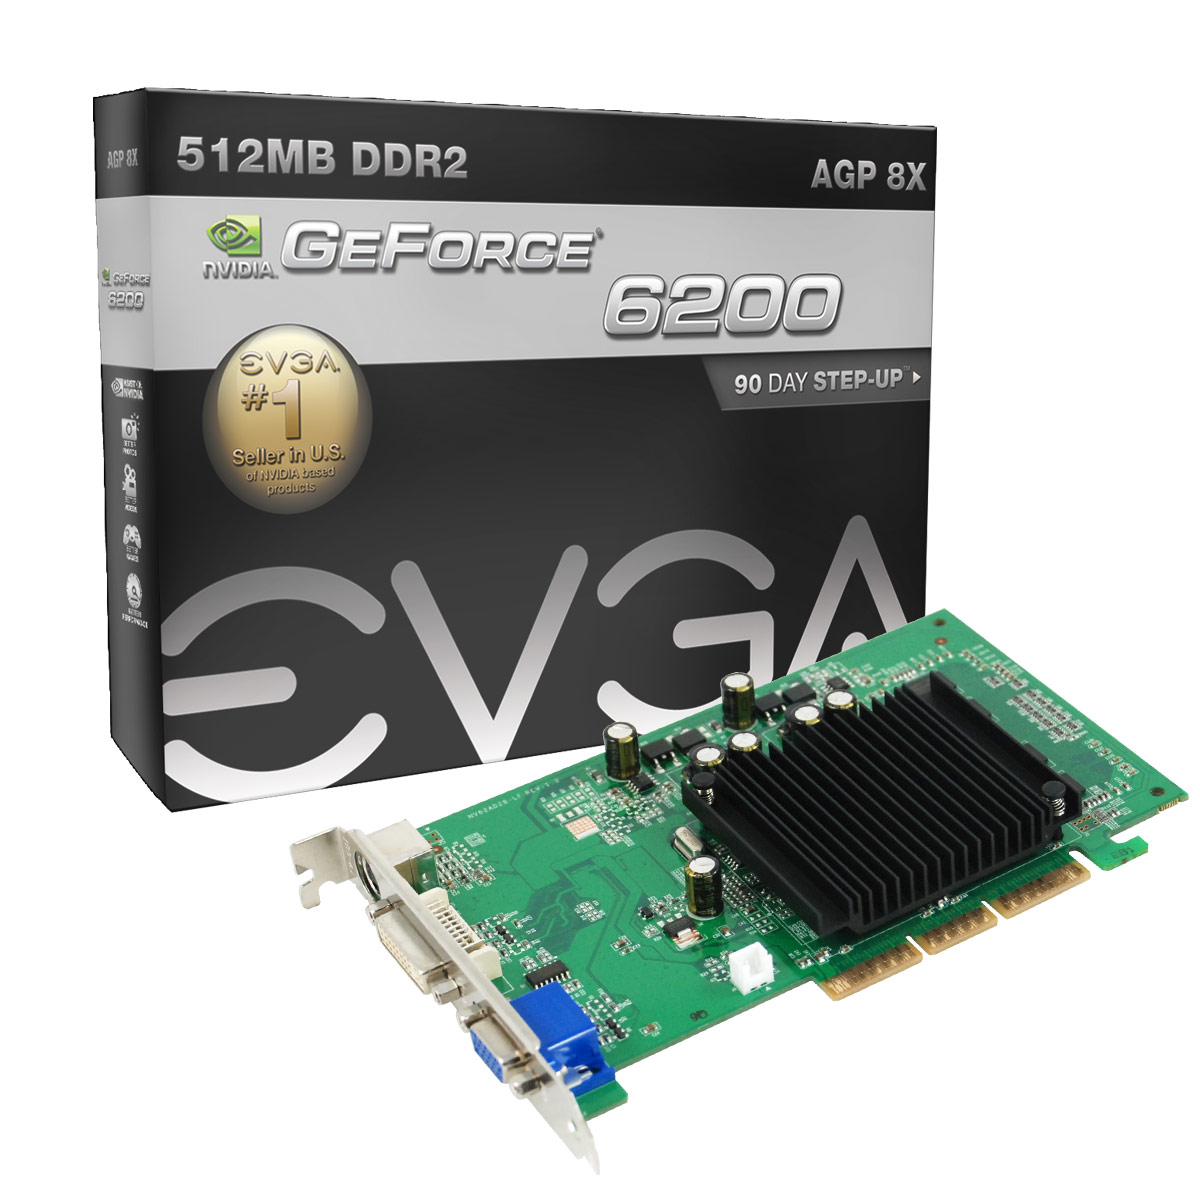 Nvidia geforce 6200 скачать драйвер бесплатно